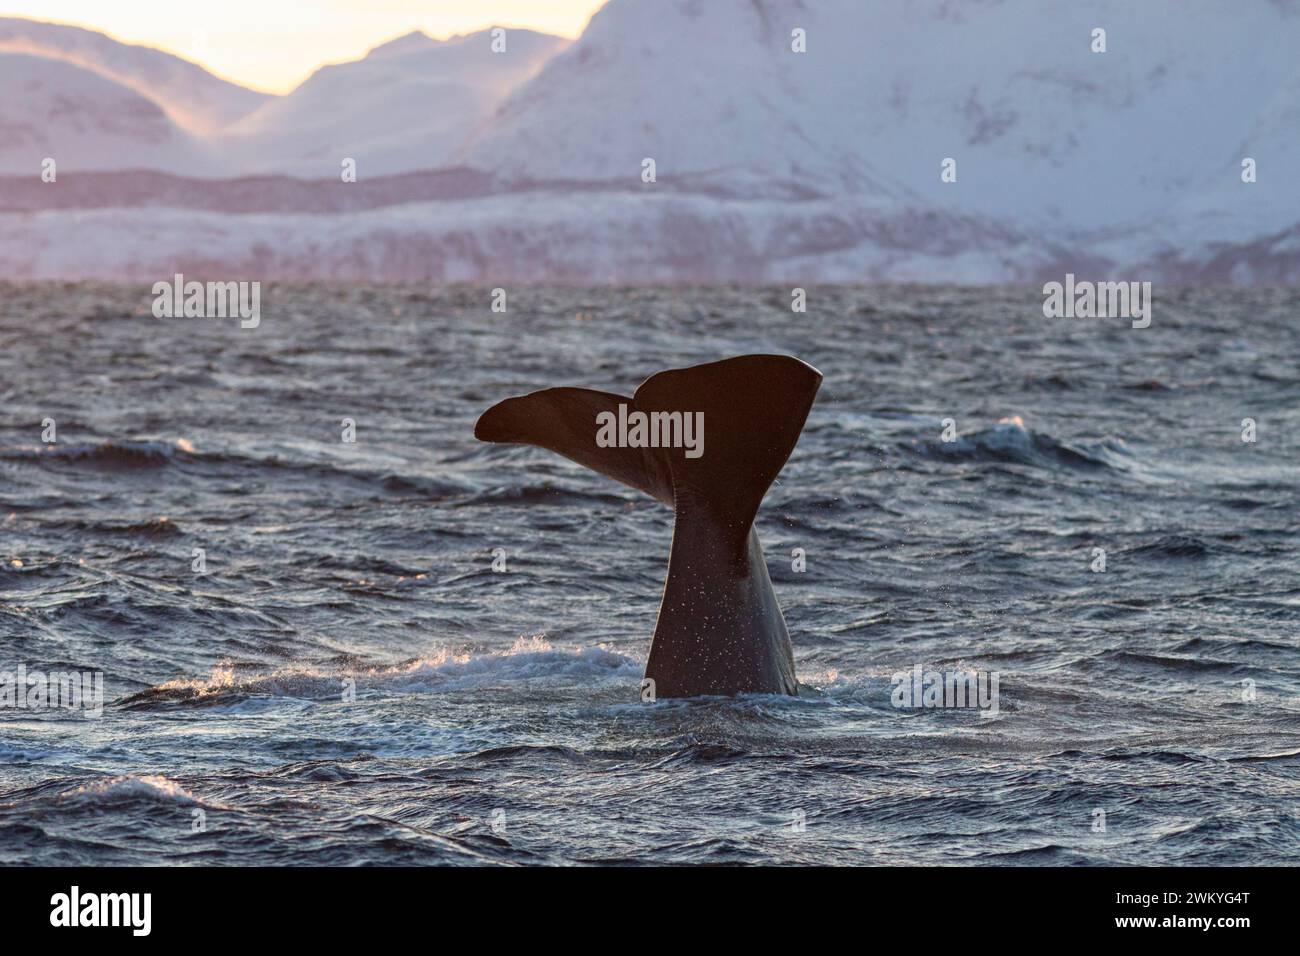 Europa, Noruega, el condado de Troms, la bala de una ballena espermática que desaparece debajo del mar frente a la costa de Skjervoy Foto de stock